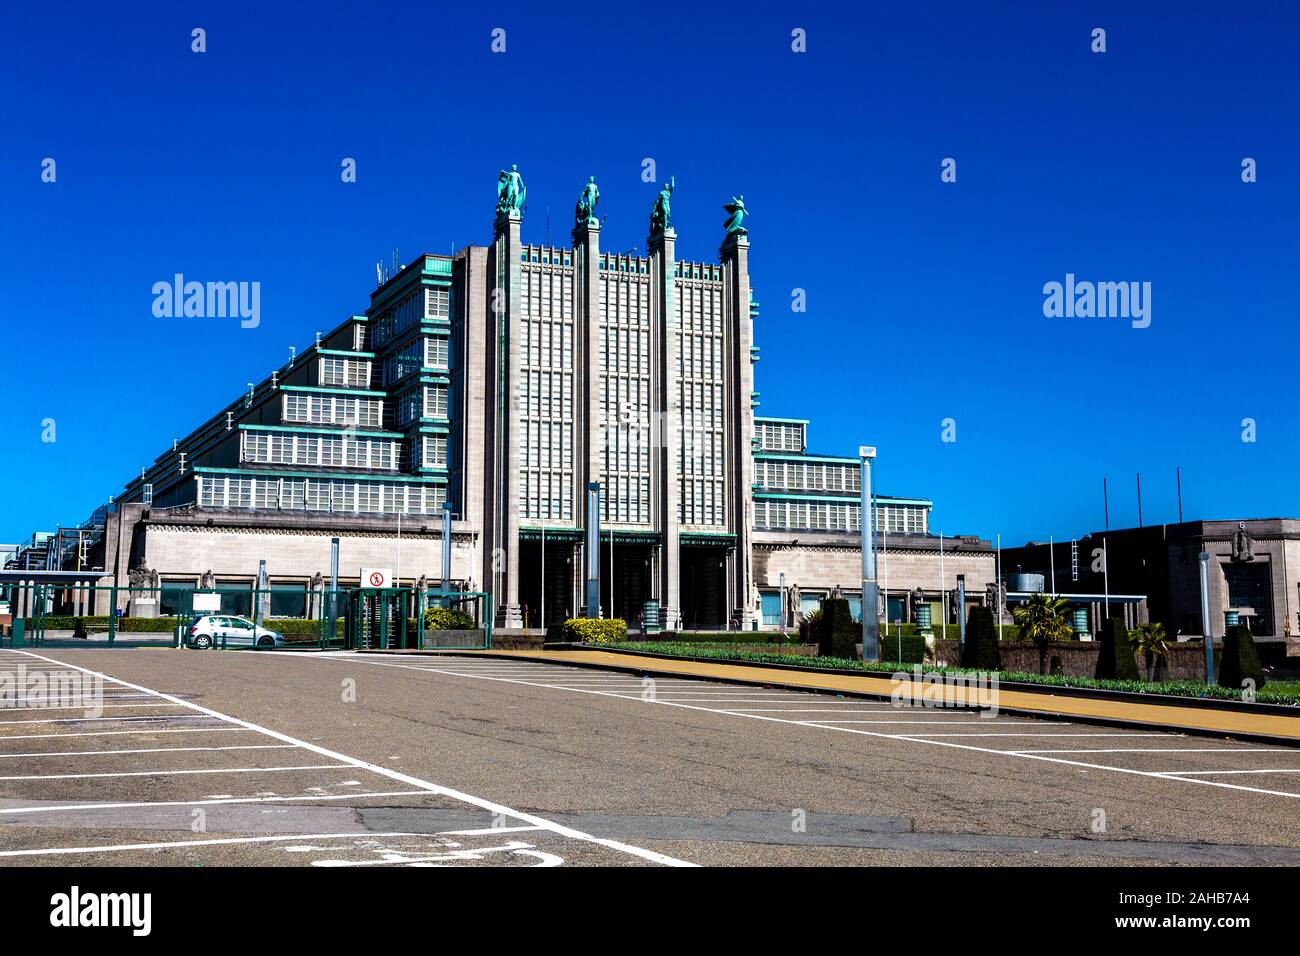 La façade Bruxelles Expo art déco bâtiment n° 5 (palais du centenaire) dans le parc du Heysel, Bruxelles, Belgique Banque D'Images